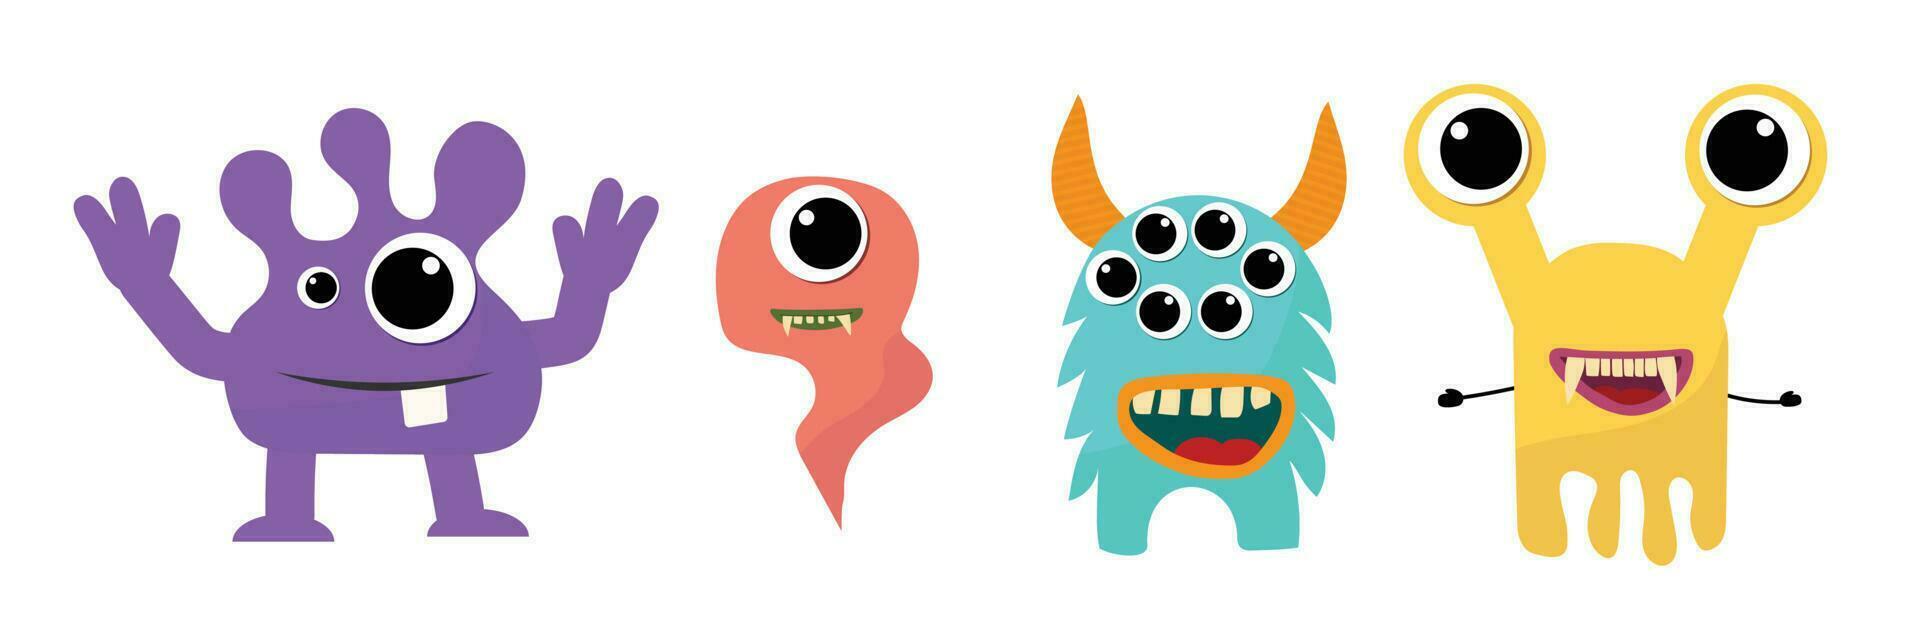 dibujos animados monstruo recopilación. loco linda monstruos diferente cómic personaje. conjunto gracioso extraterrestre o bacterias o caries vistoso vector aislado ilustración.